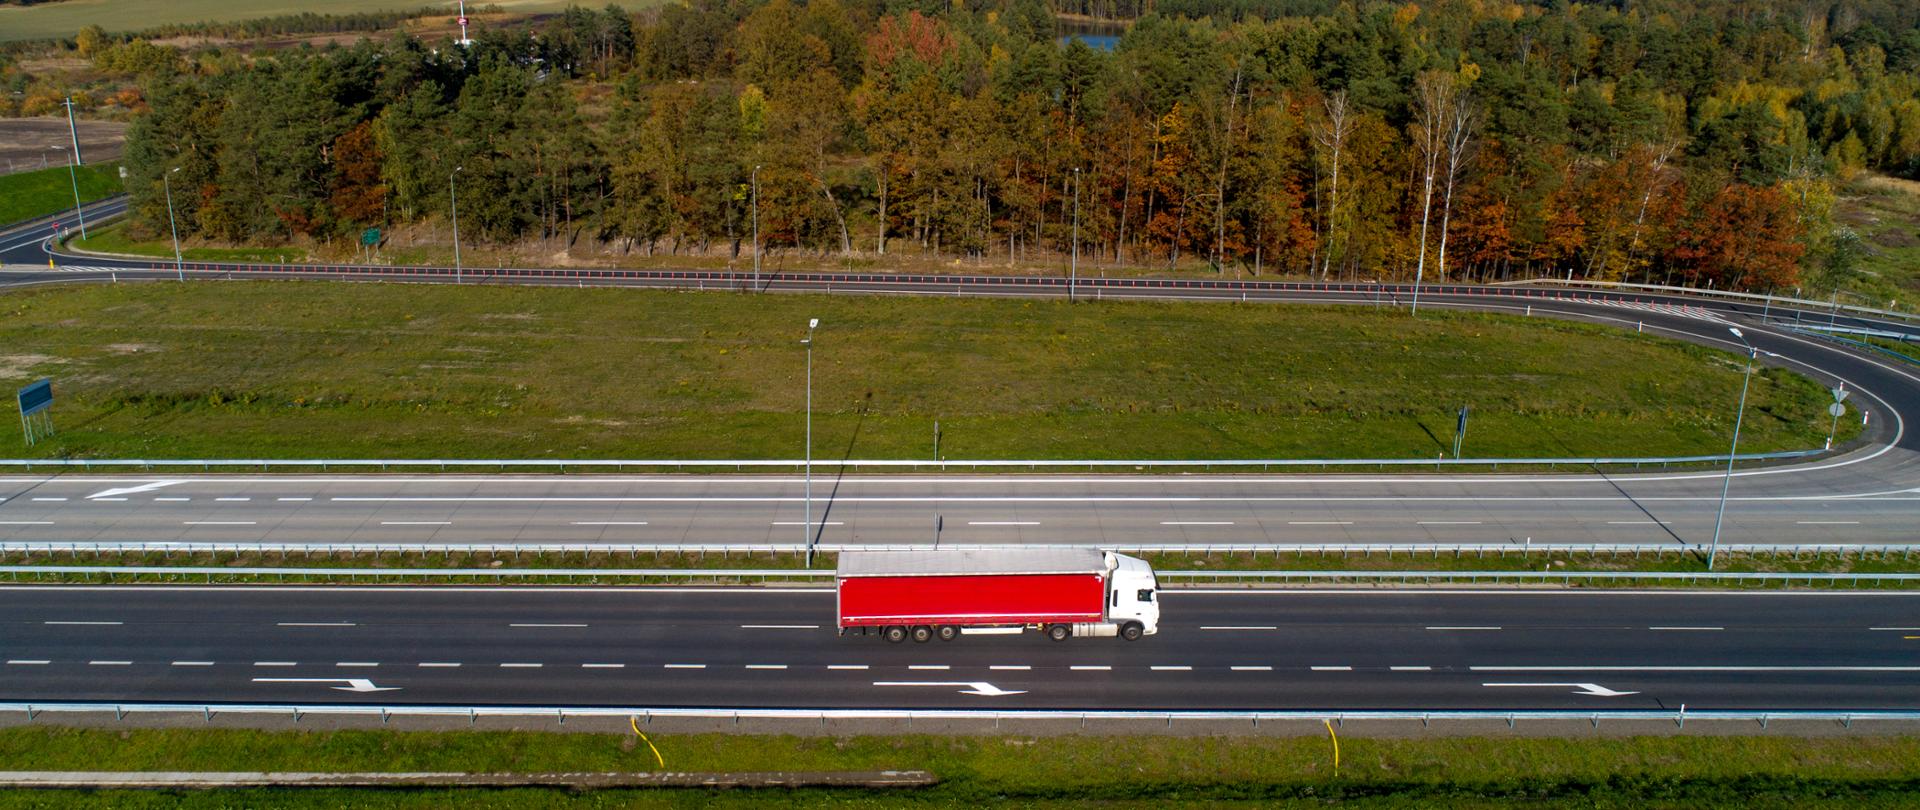 Droga dwujezdniowa - autostrada A18 w otoczeniu lasów. Ujęcie drogi w poziomie, sceneria jesienna. Na drodze samochód ciężarowy z czerwoną naczepą.